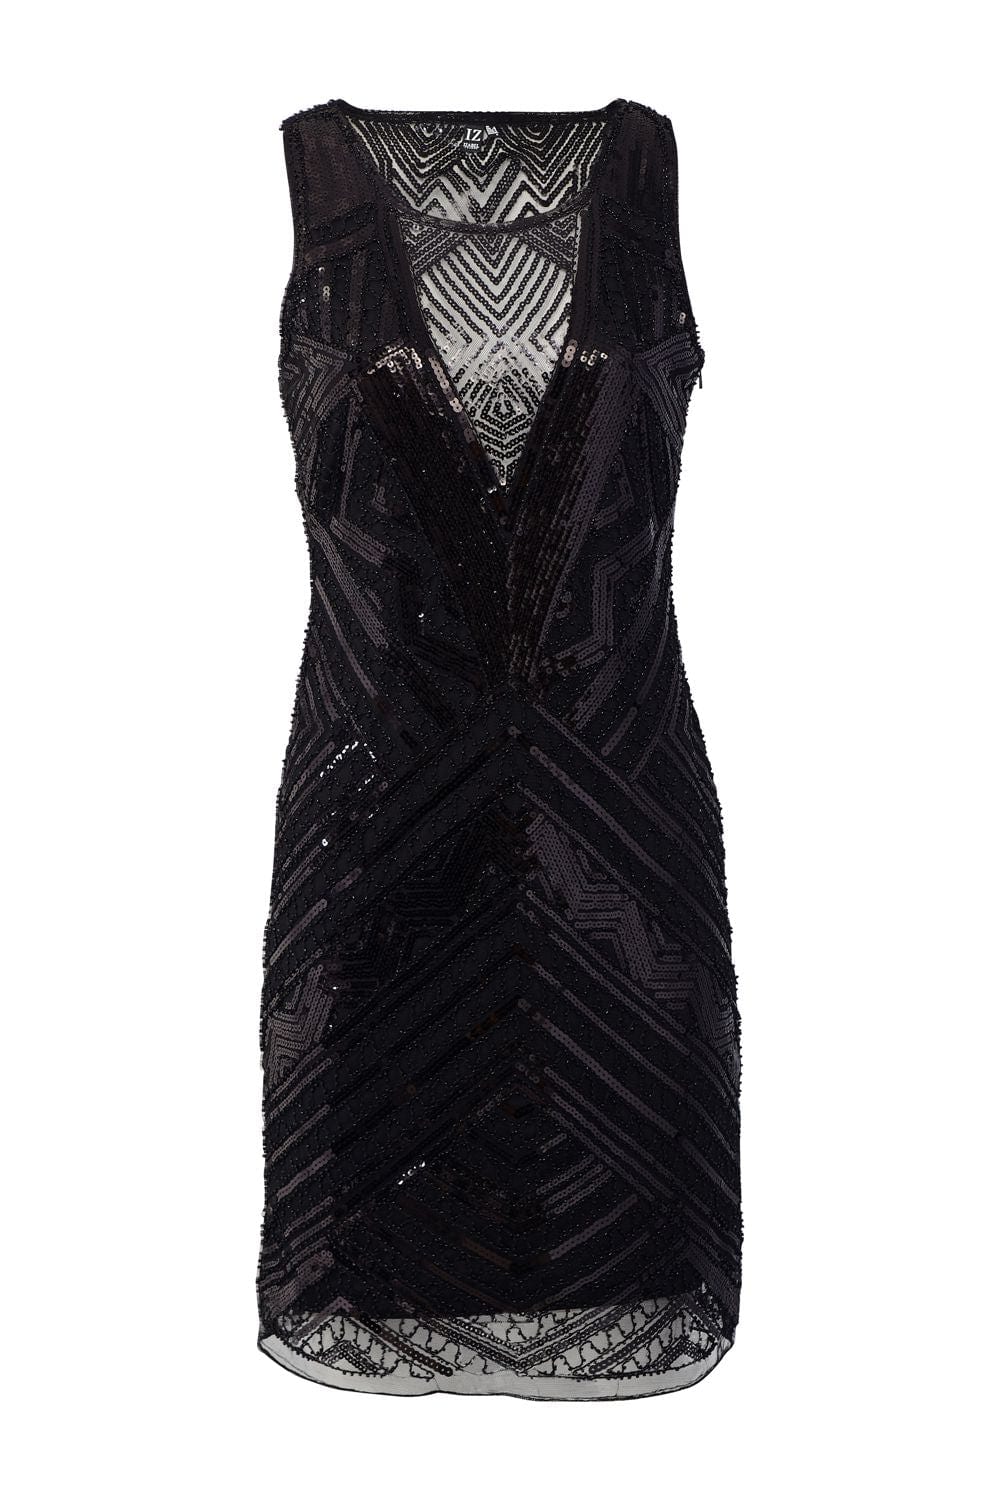 Black | Aztec Sequin Party Dress